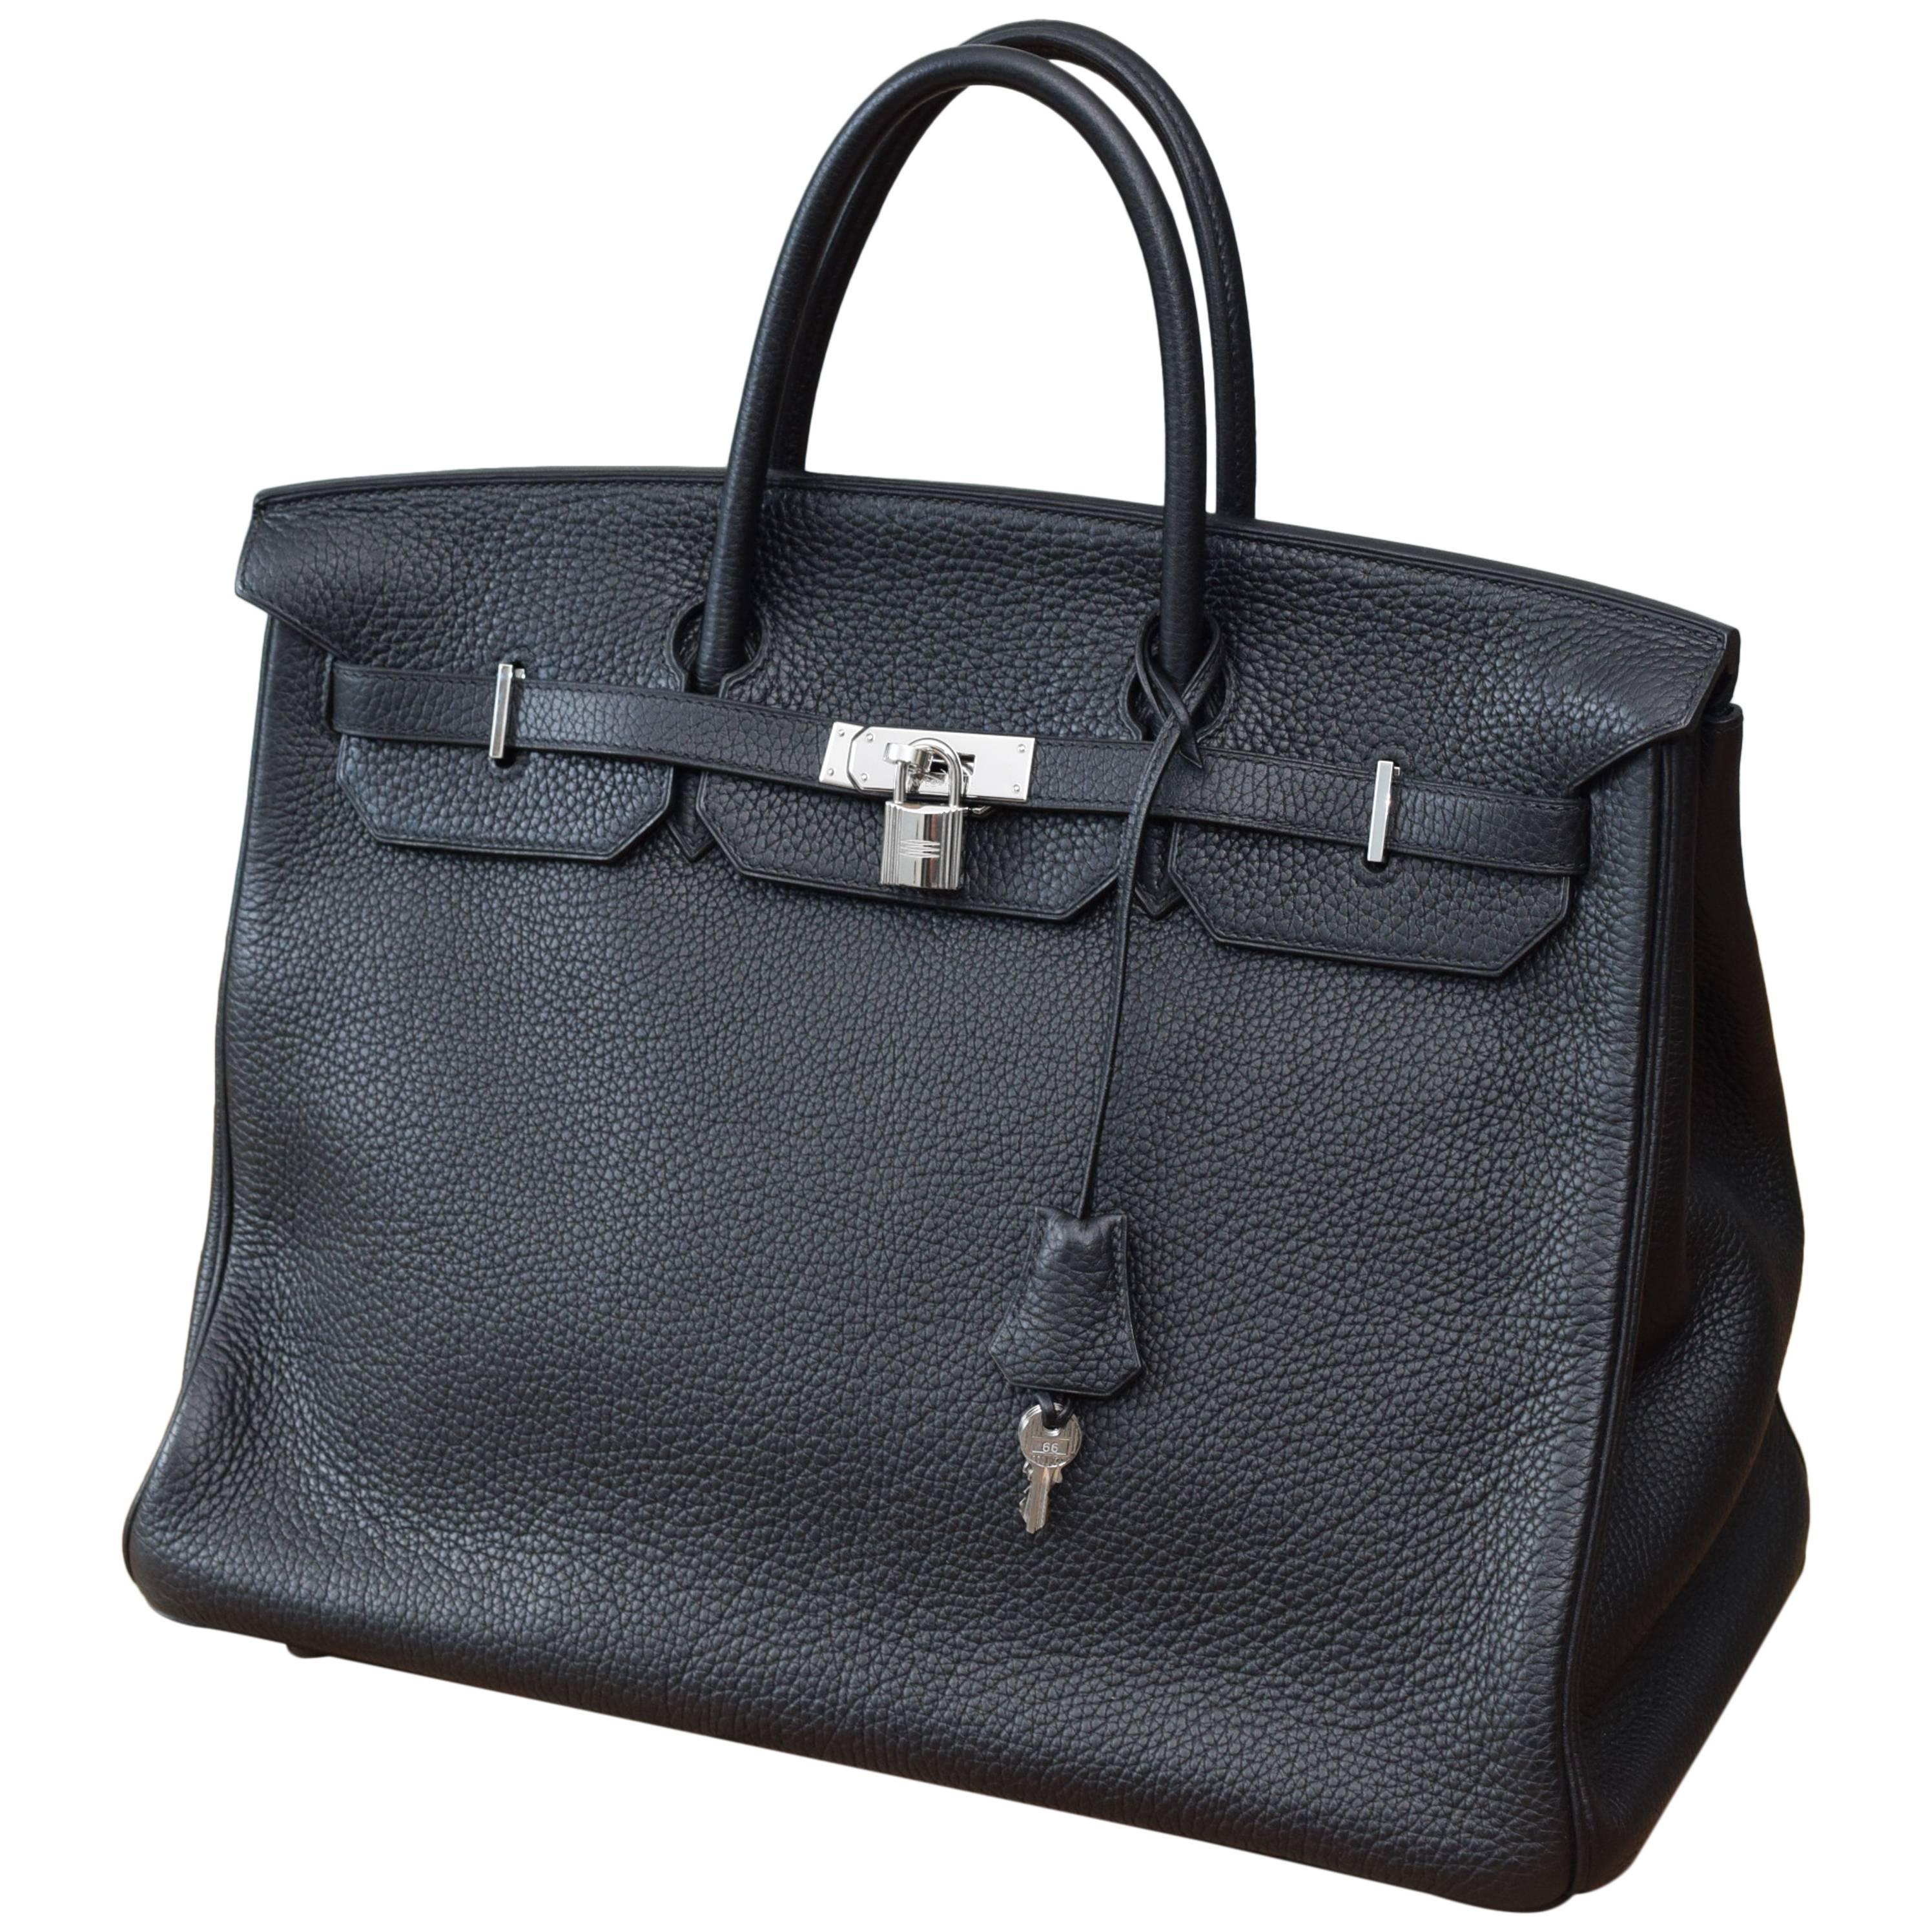 Hermes Birkin 40cm Togo Black Leather Bag For Sale